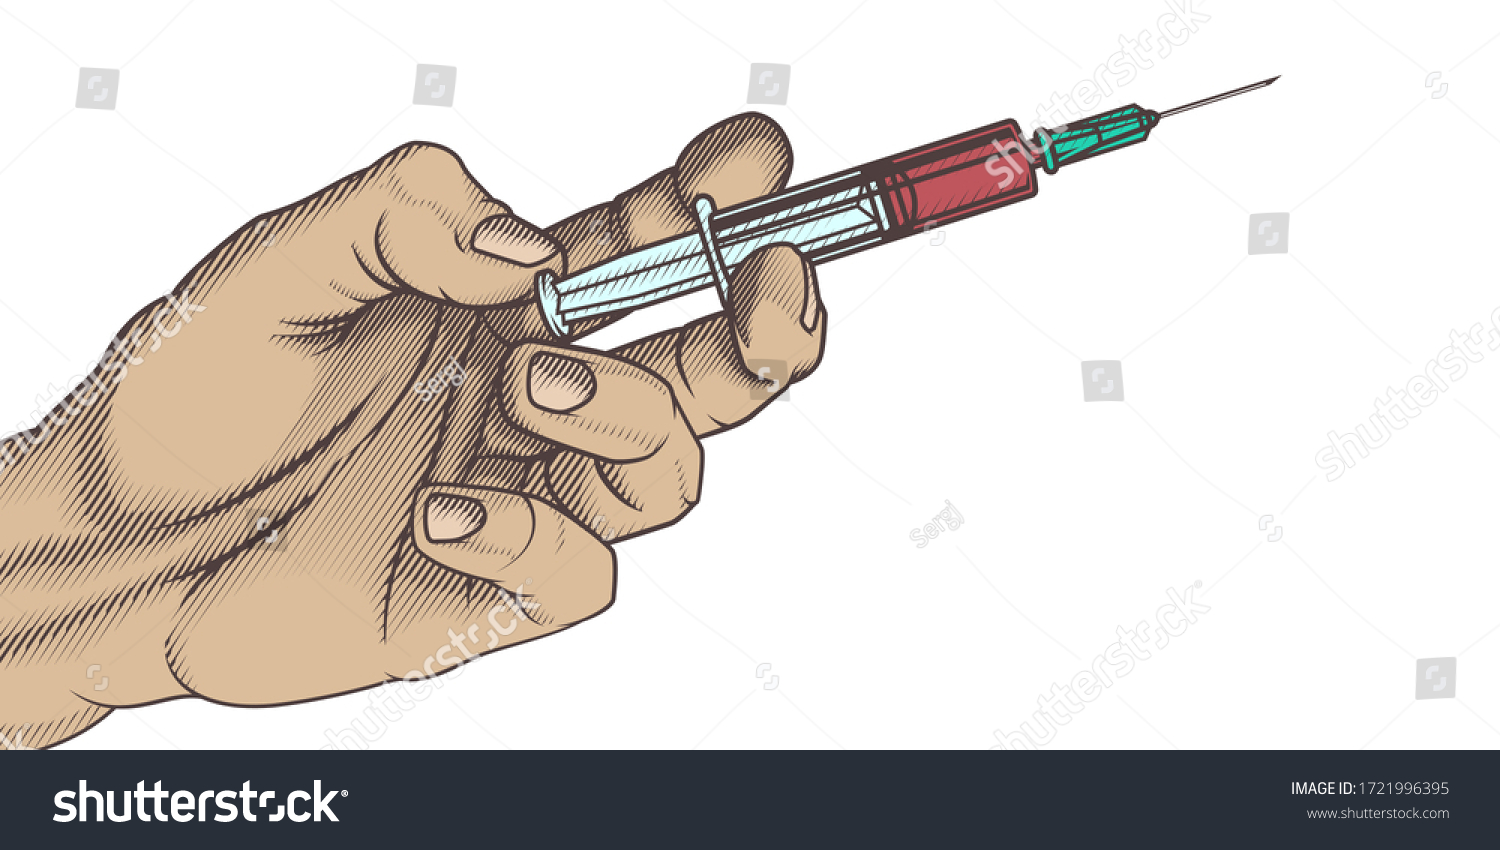 Рука со шприцом рисунок карандашом